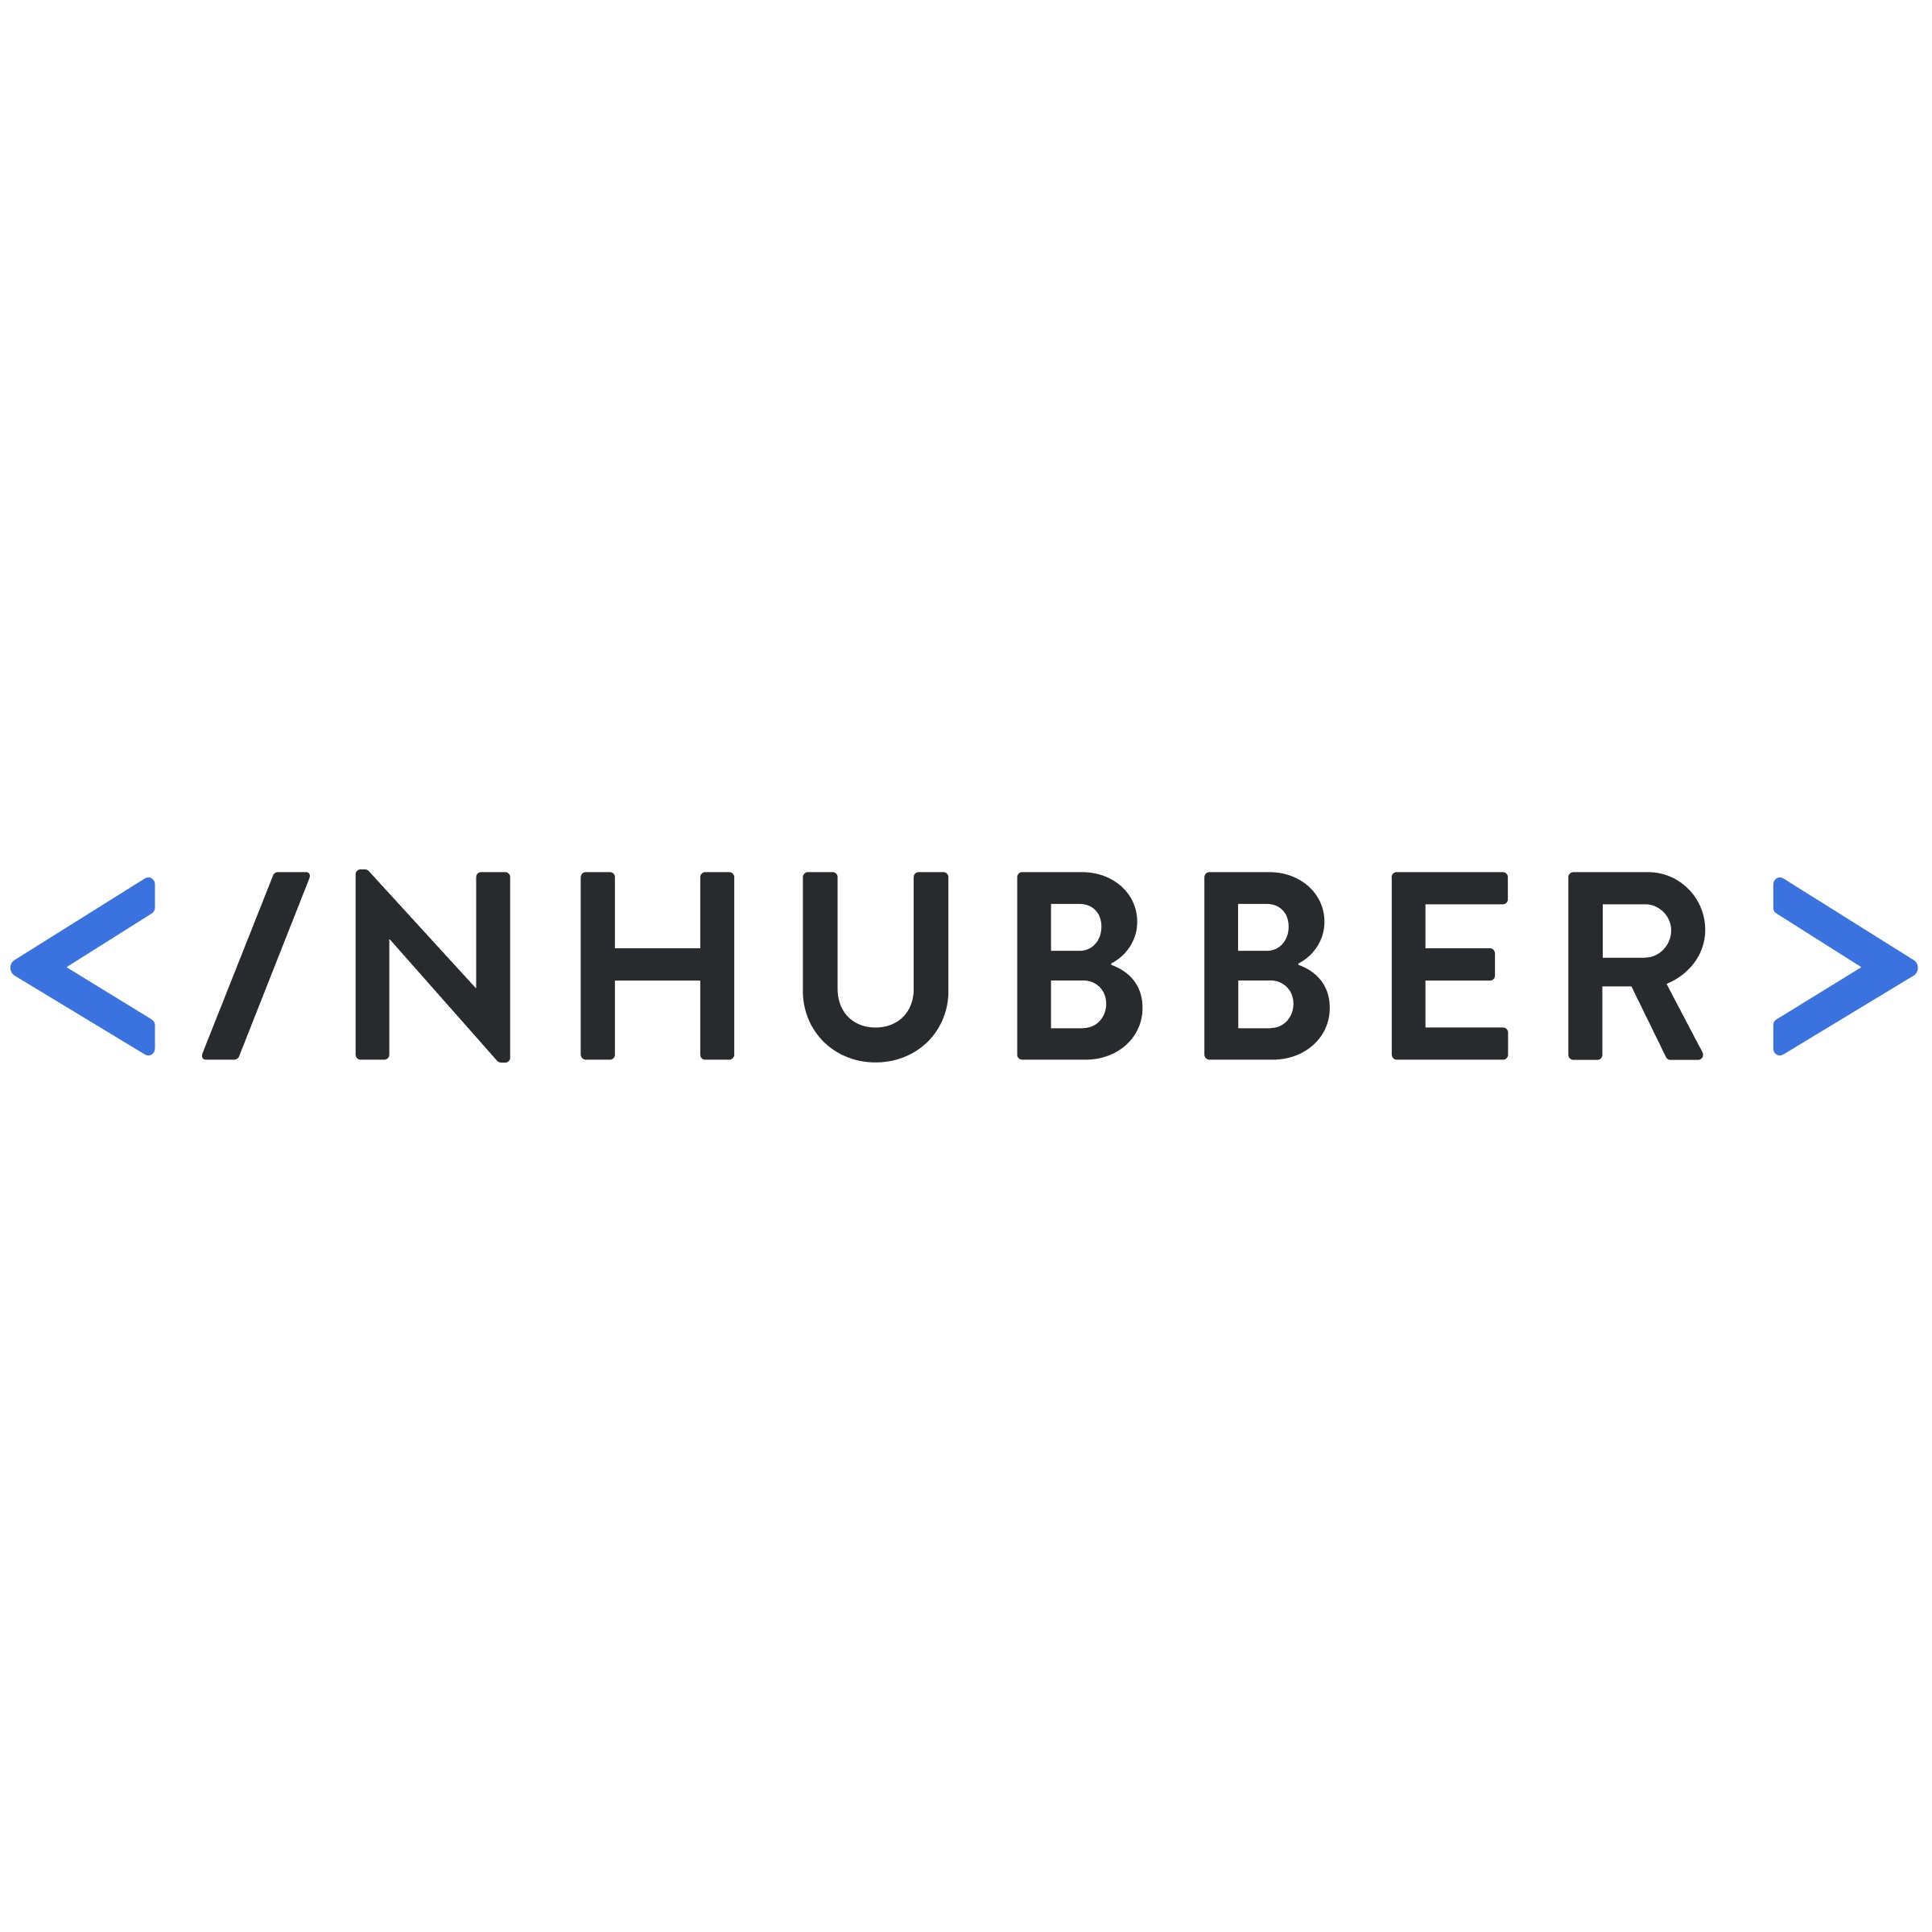 INHUBBER - Logo